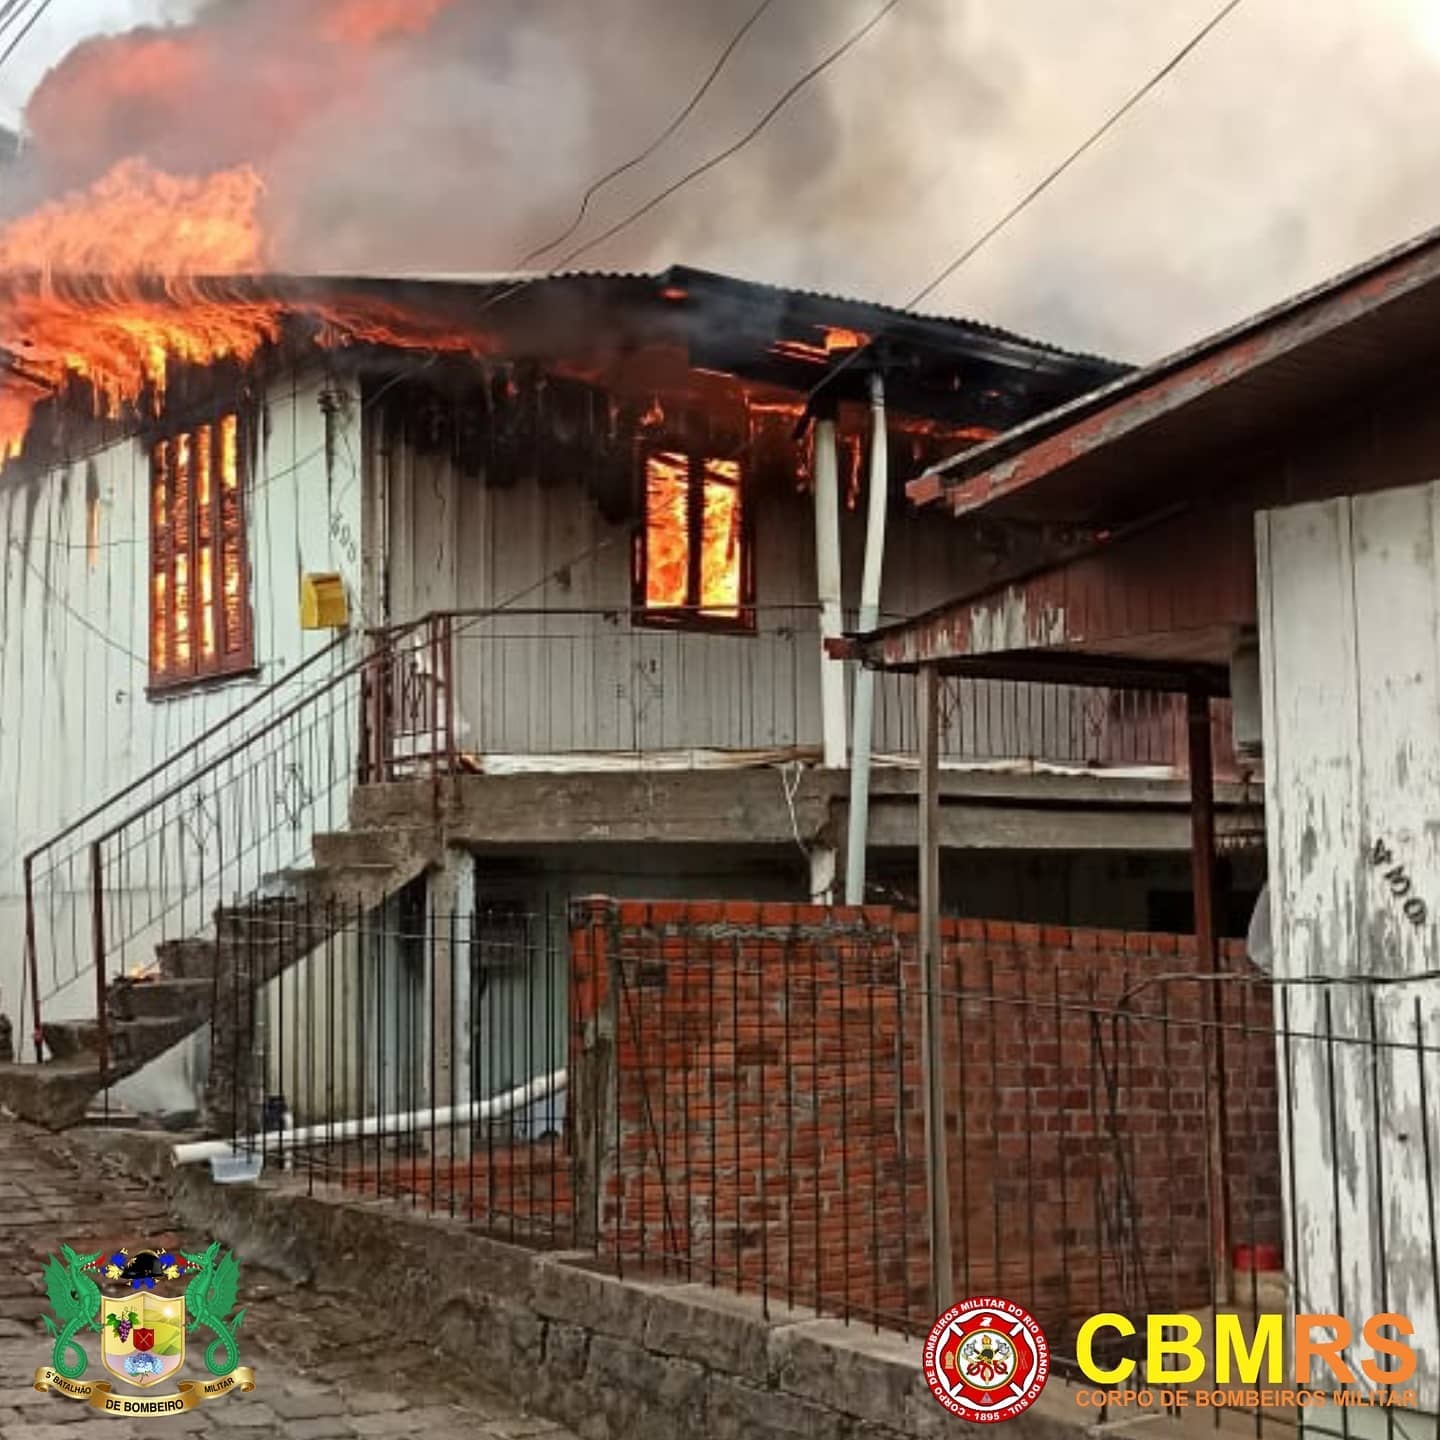 O Corpo de Bombeiros Militar do Rio Grande do Sul – CBMRS - combateu incêndio em uma residência no bairro São Francisco.